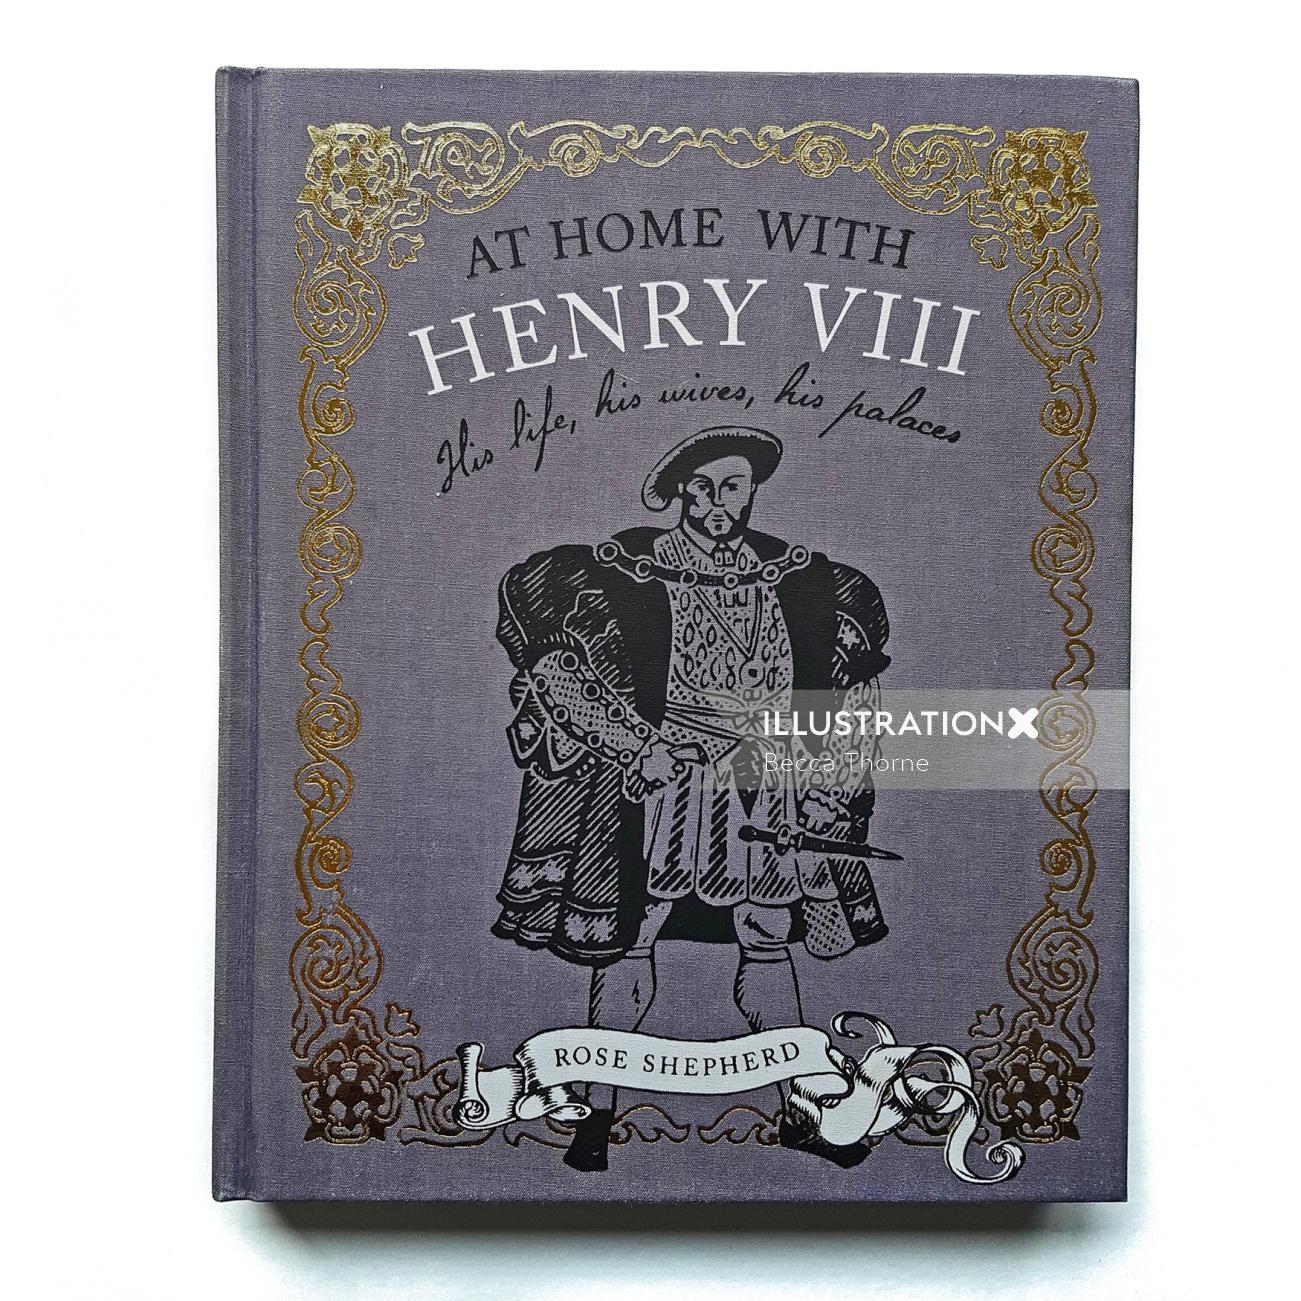 Rose Shepherd の At Home With Henry VIII の表紙で、ヘンリー 8 世のリノカットのイラストが描かれています